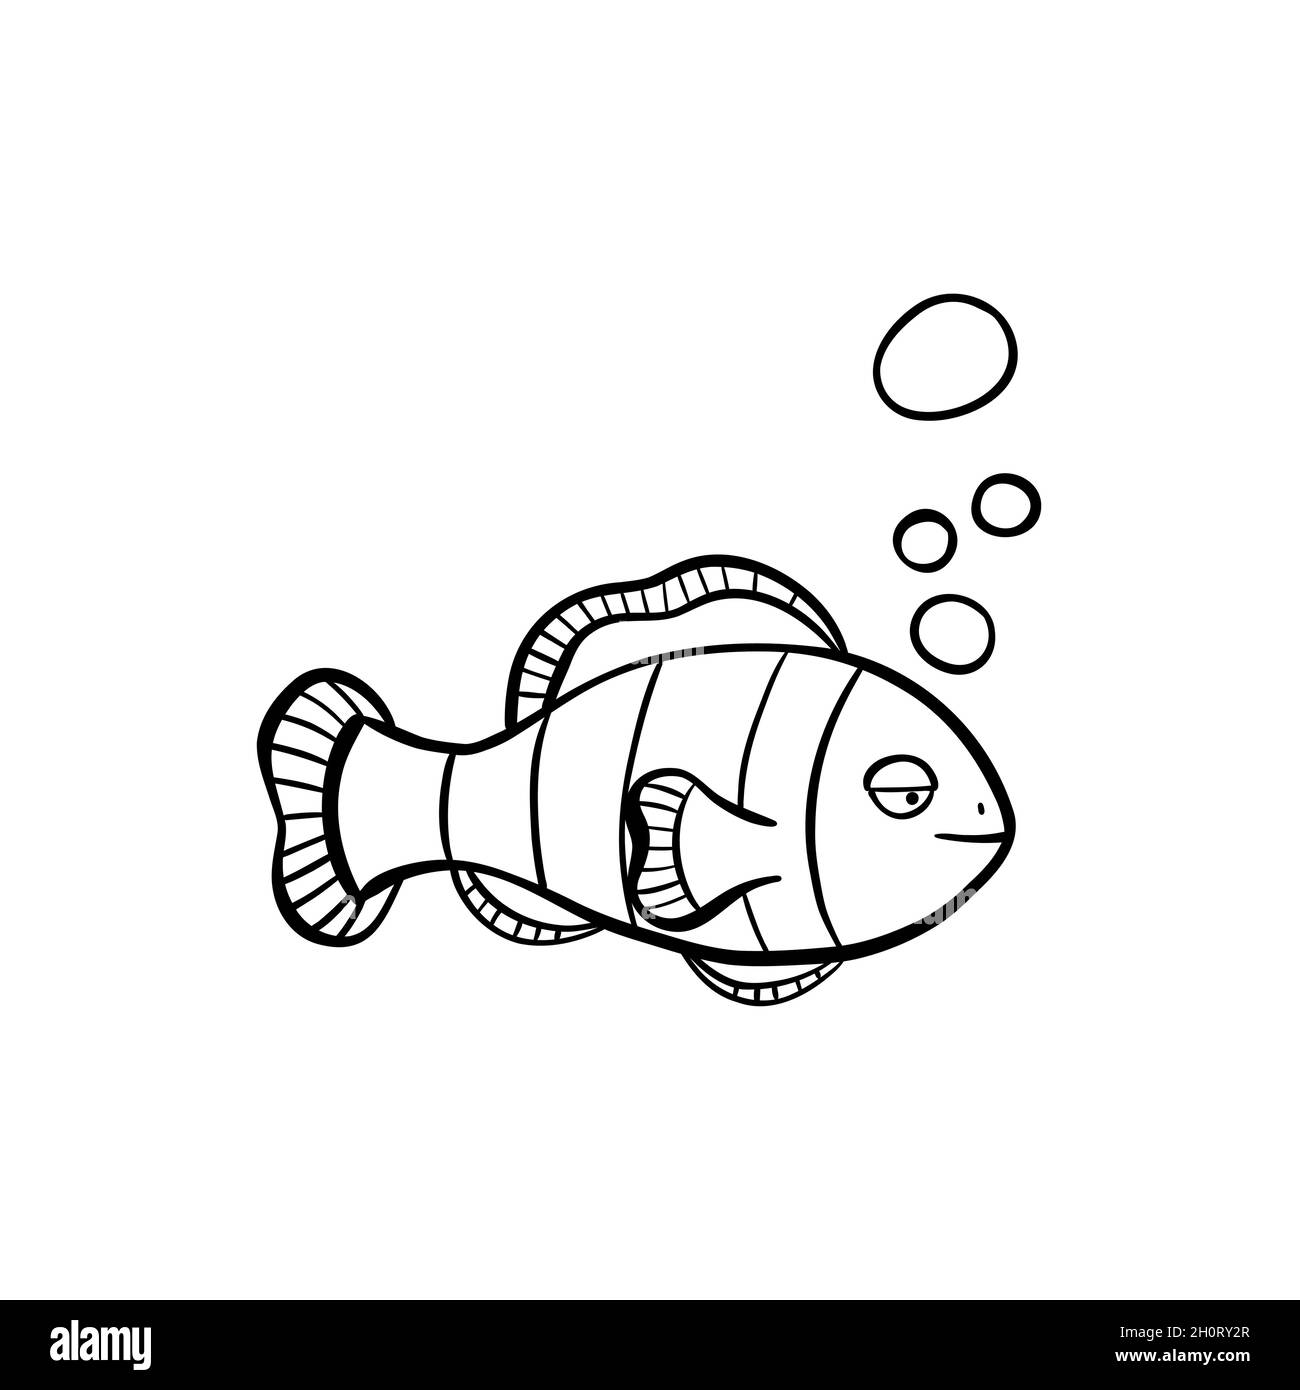 illustrazione di pesce pagliaccio disegnata a mano in stile doodle Illustrazione Vettoriale